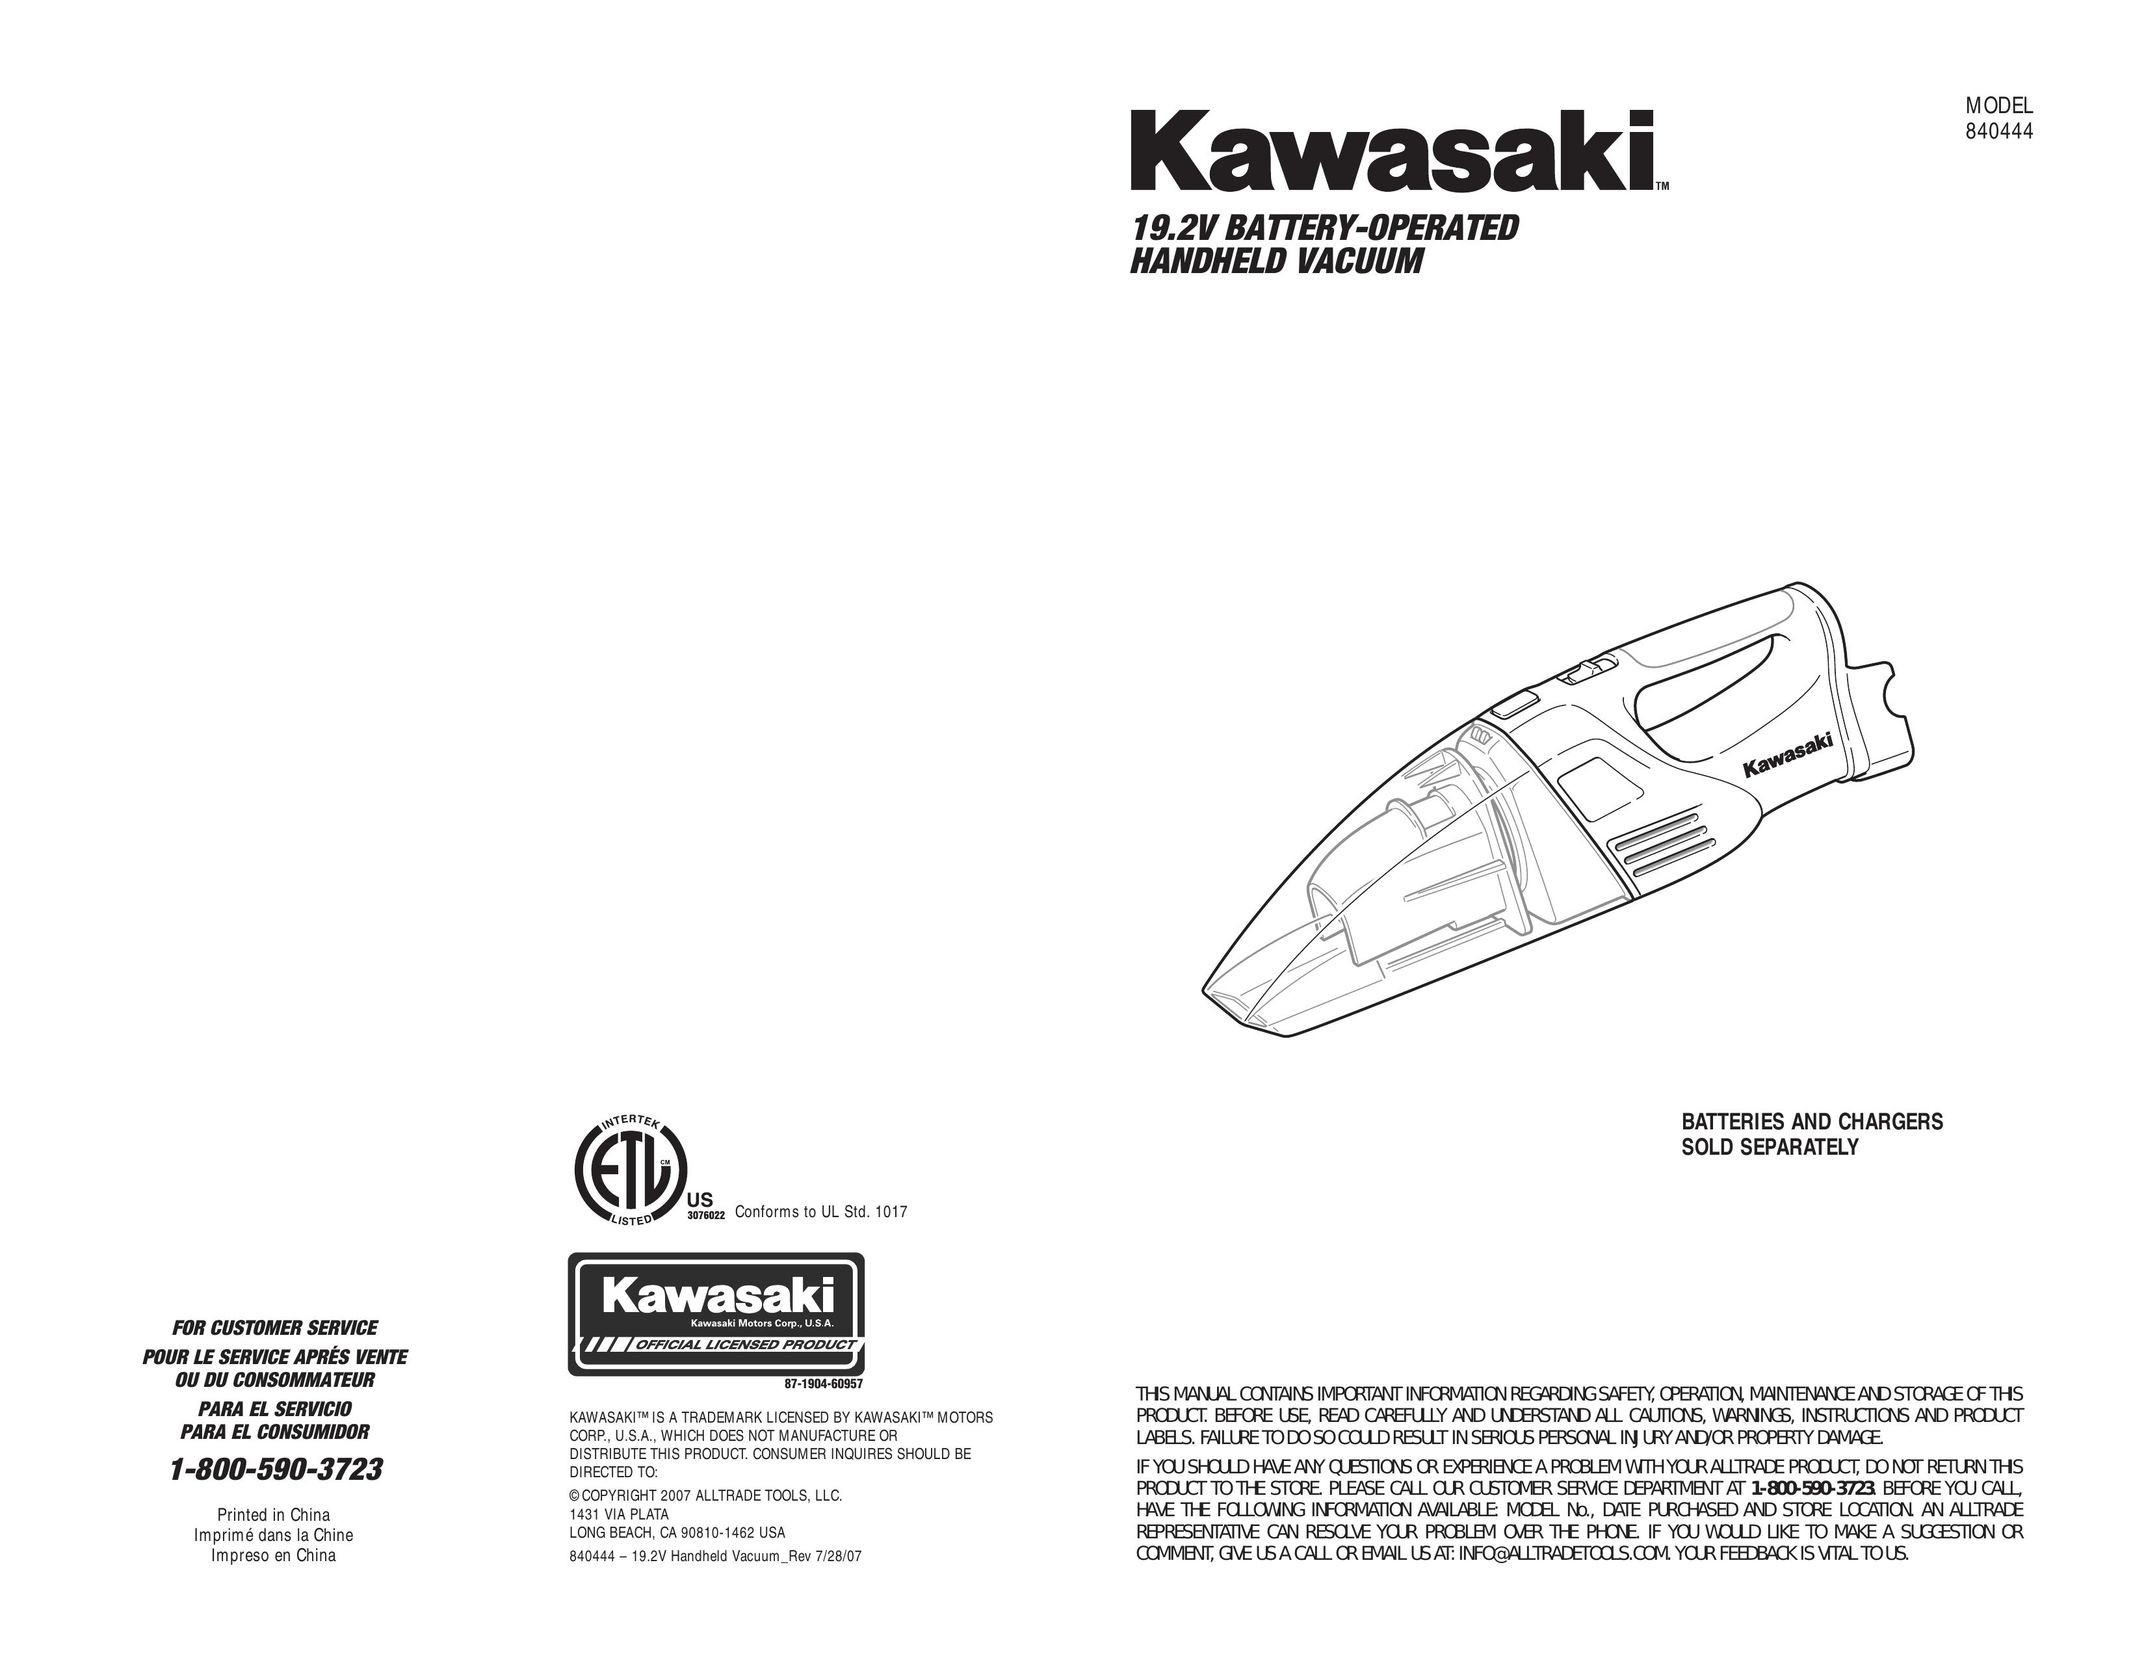 Kawasaki 840444 Vacuum Cleaner User Manual